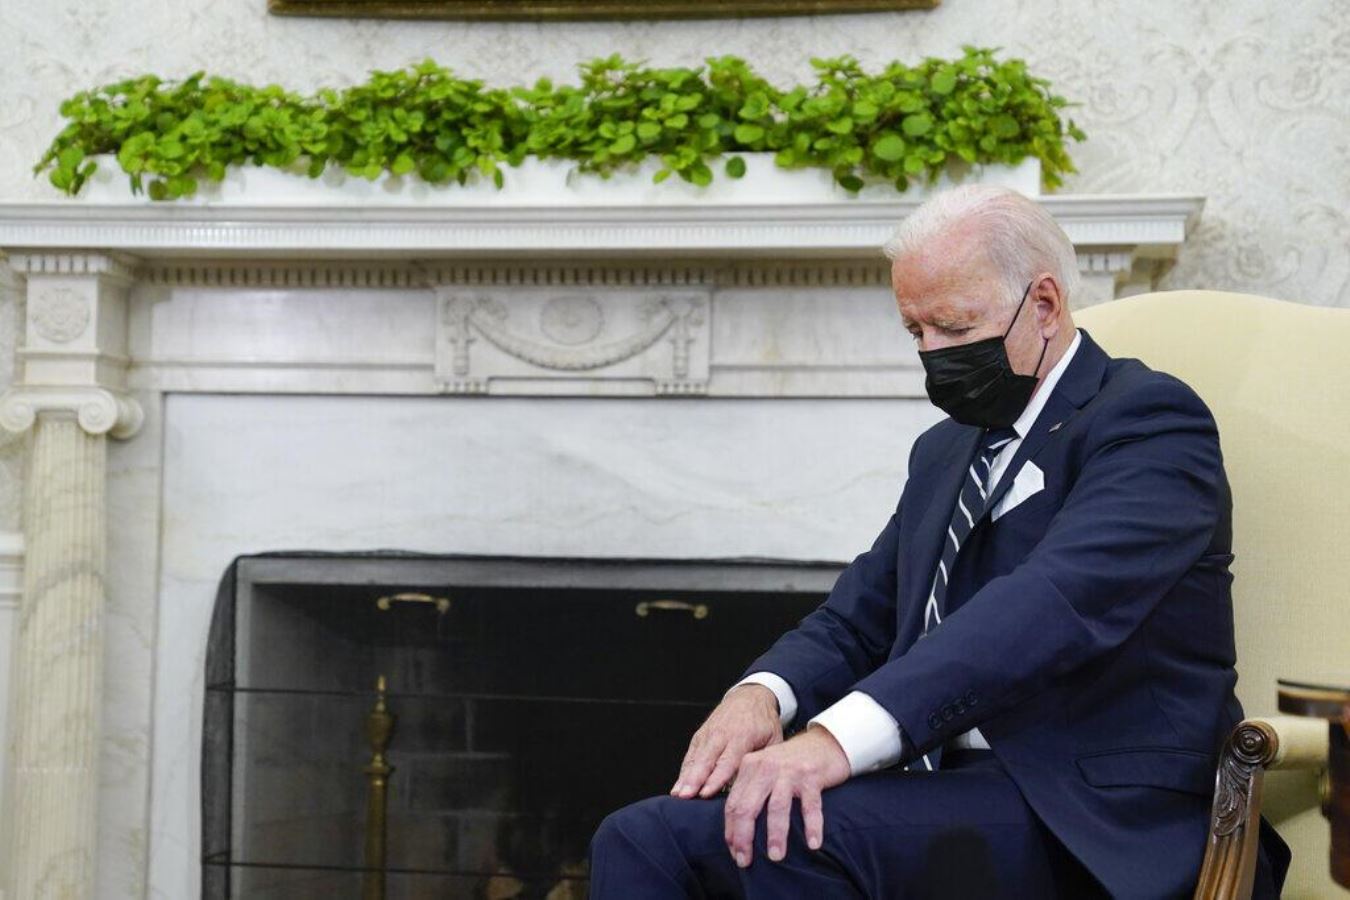 Dünya bu görüntüleri konuşuyor: Joe Biden toplantıda uyuyakaldı